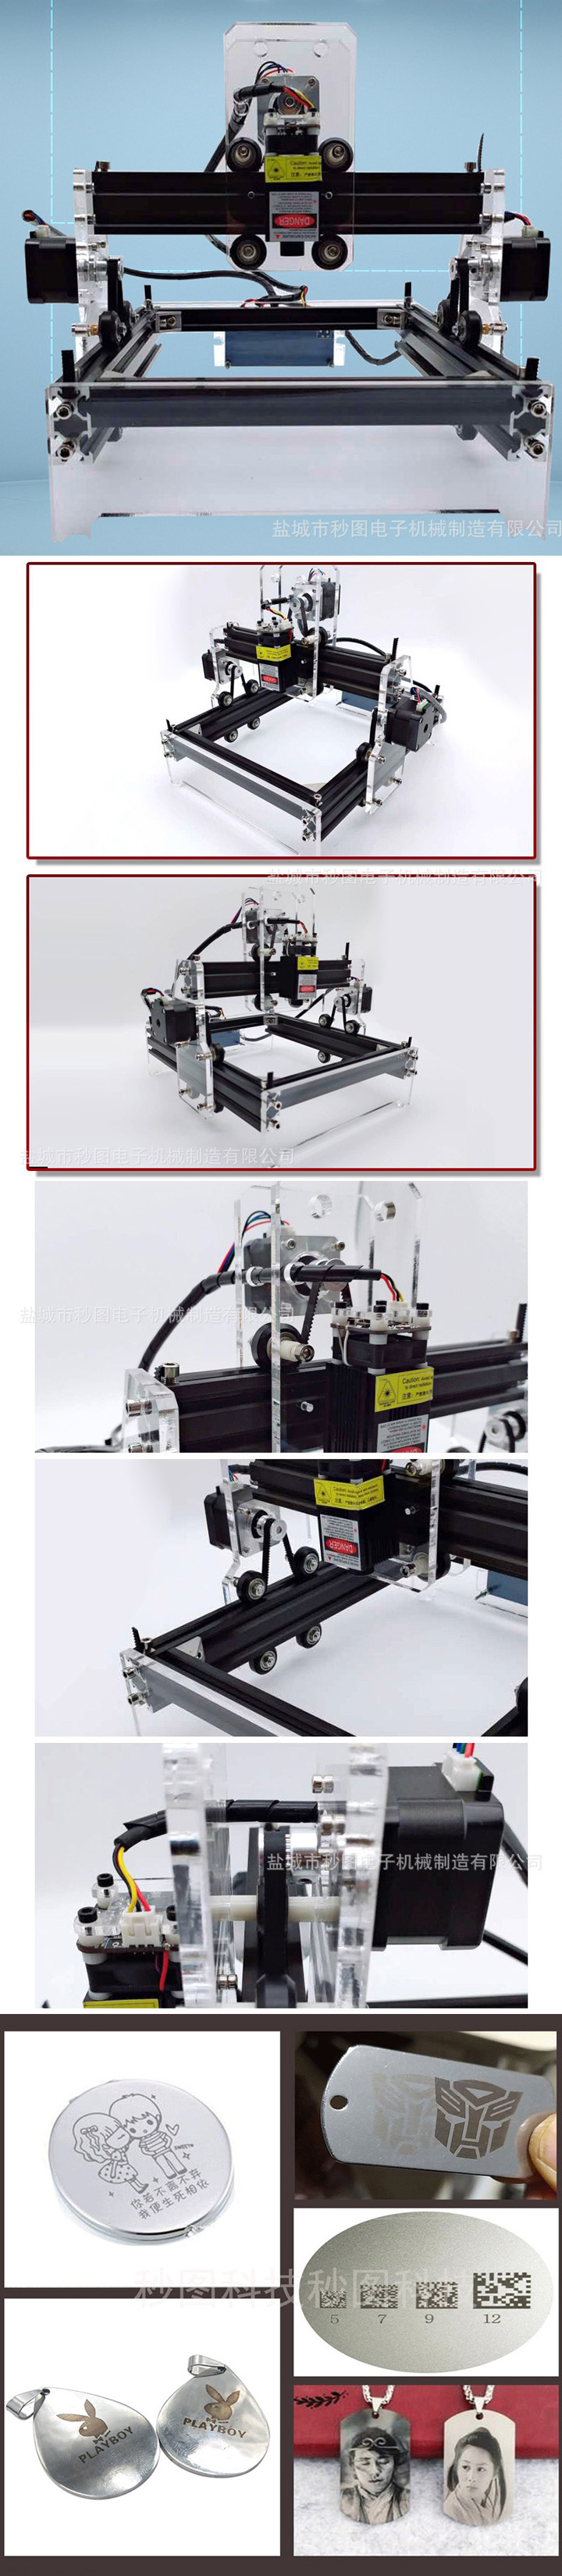 Macchina per incisione laser CNC